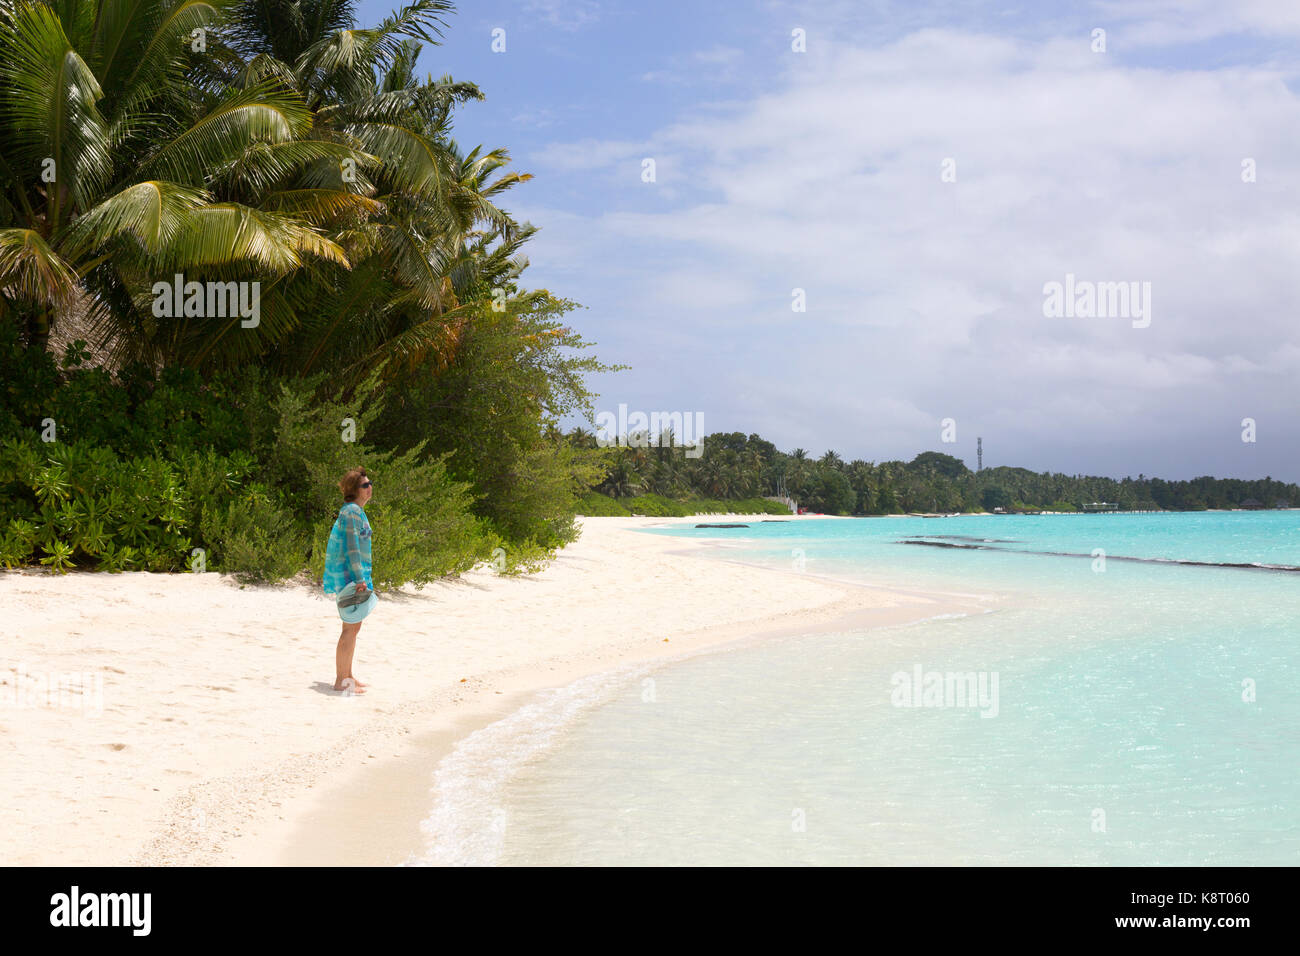 Maldives Beach - une femme touristique debout sur la plage, Rasdhoo Atoll, , les Maldives, Asie Banque D'Images